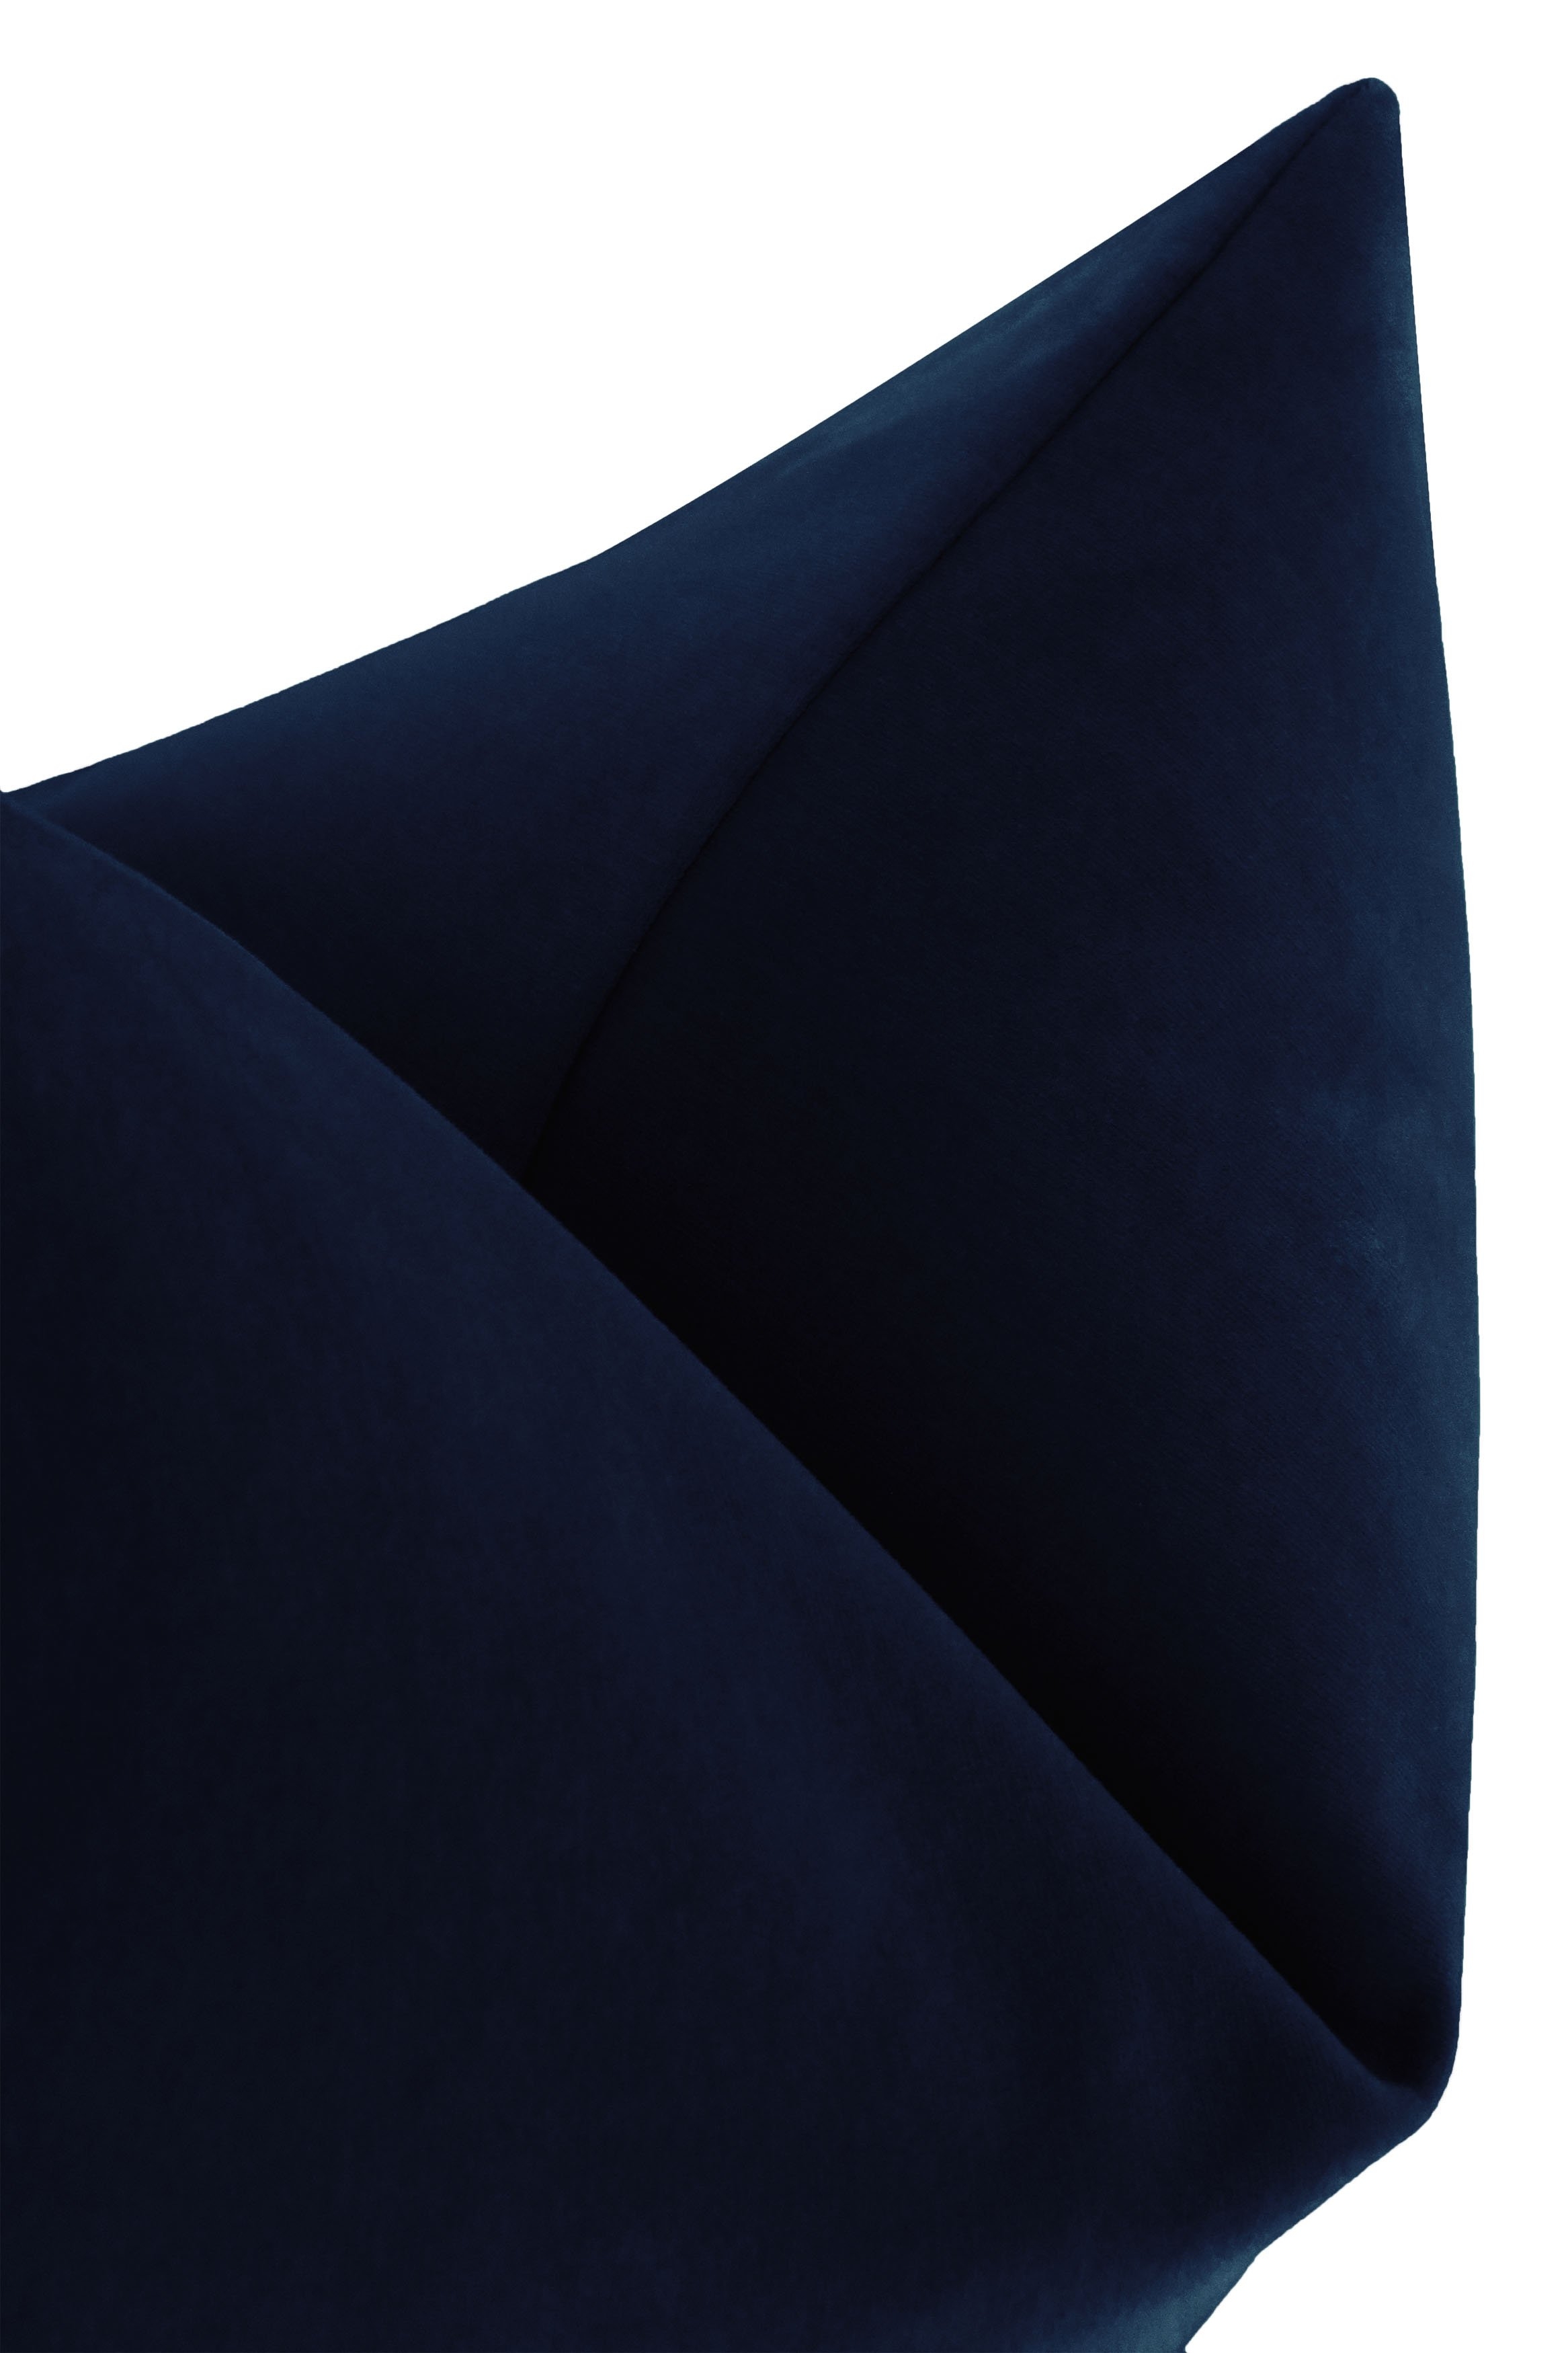 Studio Velvet Pillow Cover, Sapphire, 20" x 20" - Image 1